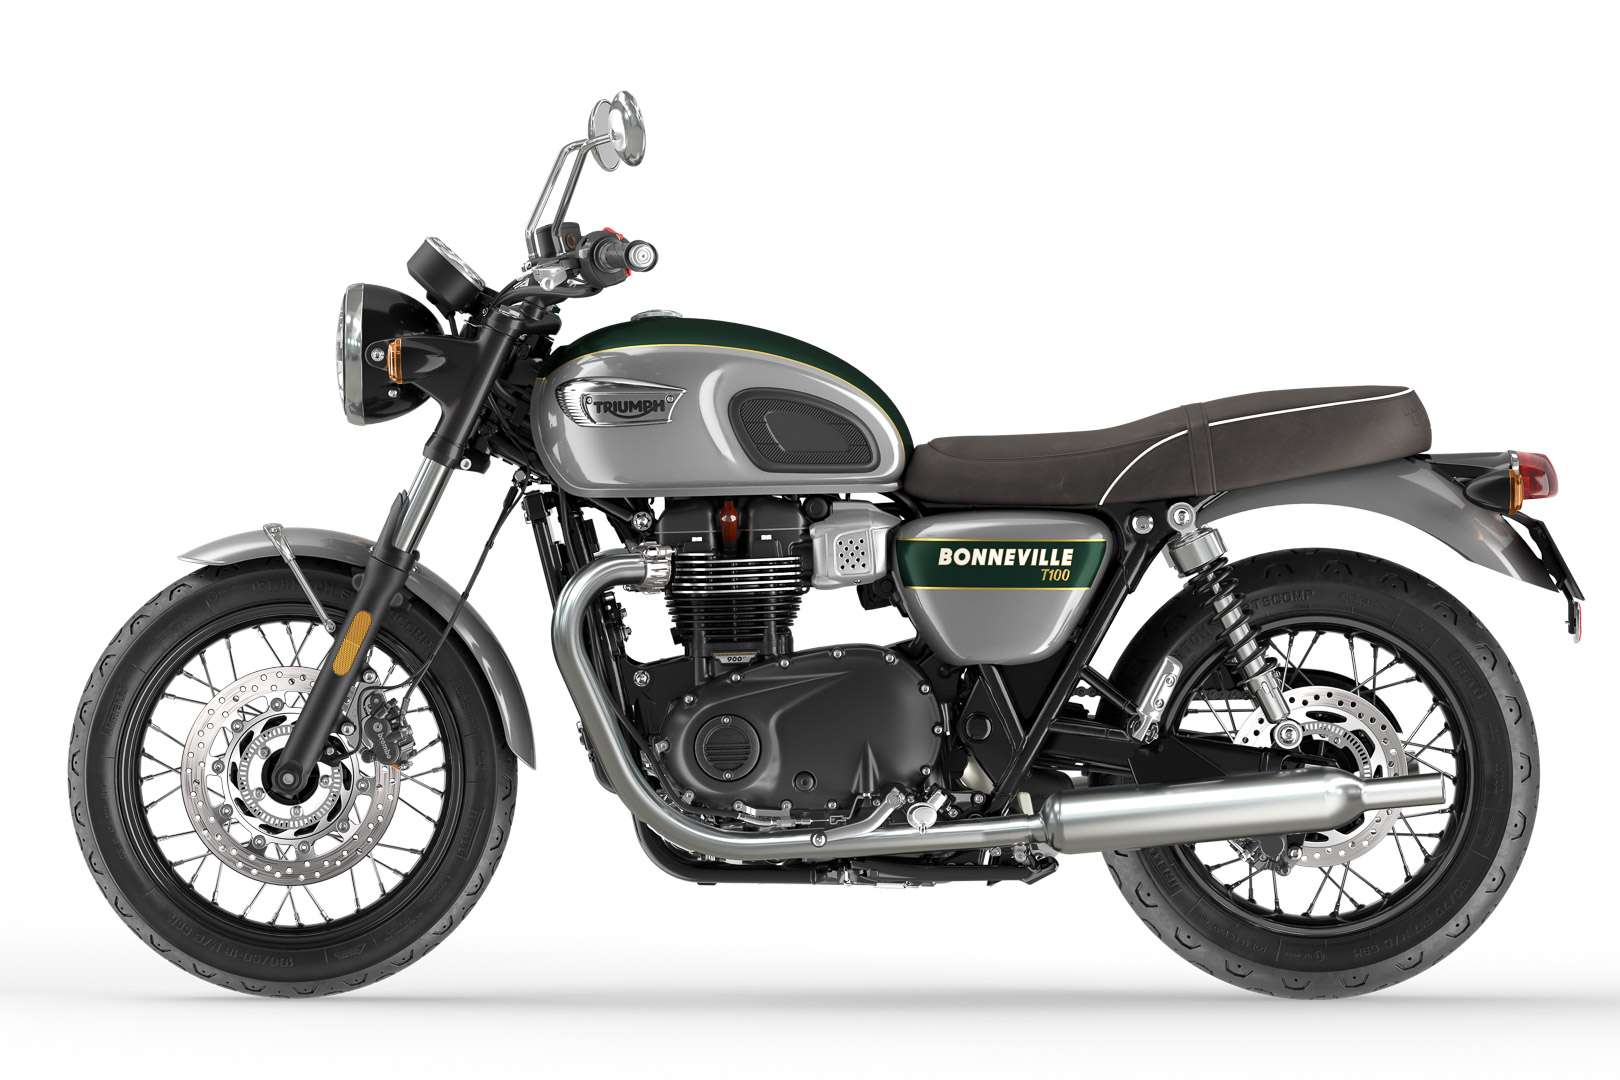 2022-triumph-bonneville-T100-gold-line-special-edition-motorcycle-7